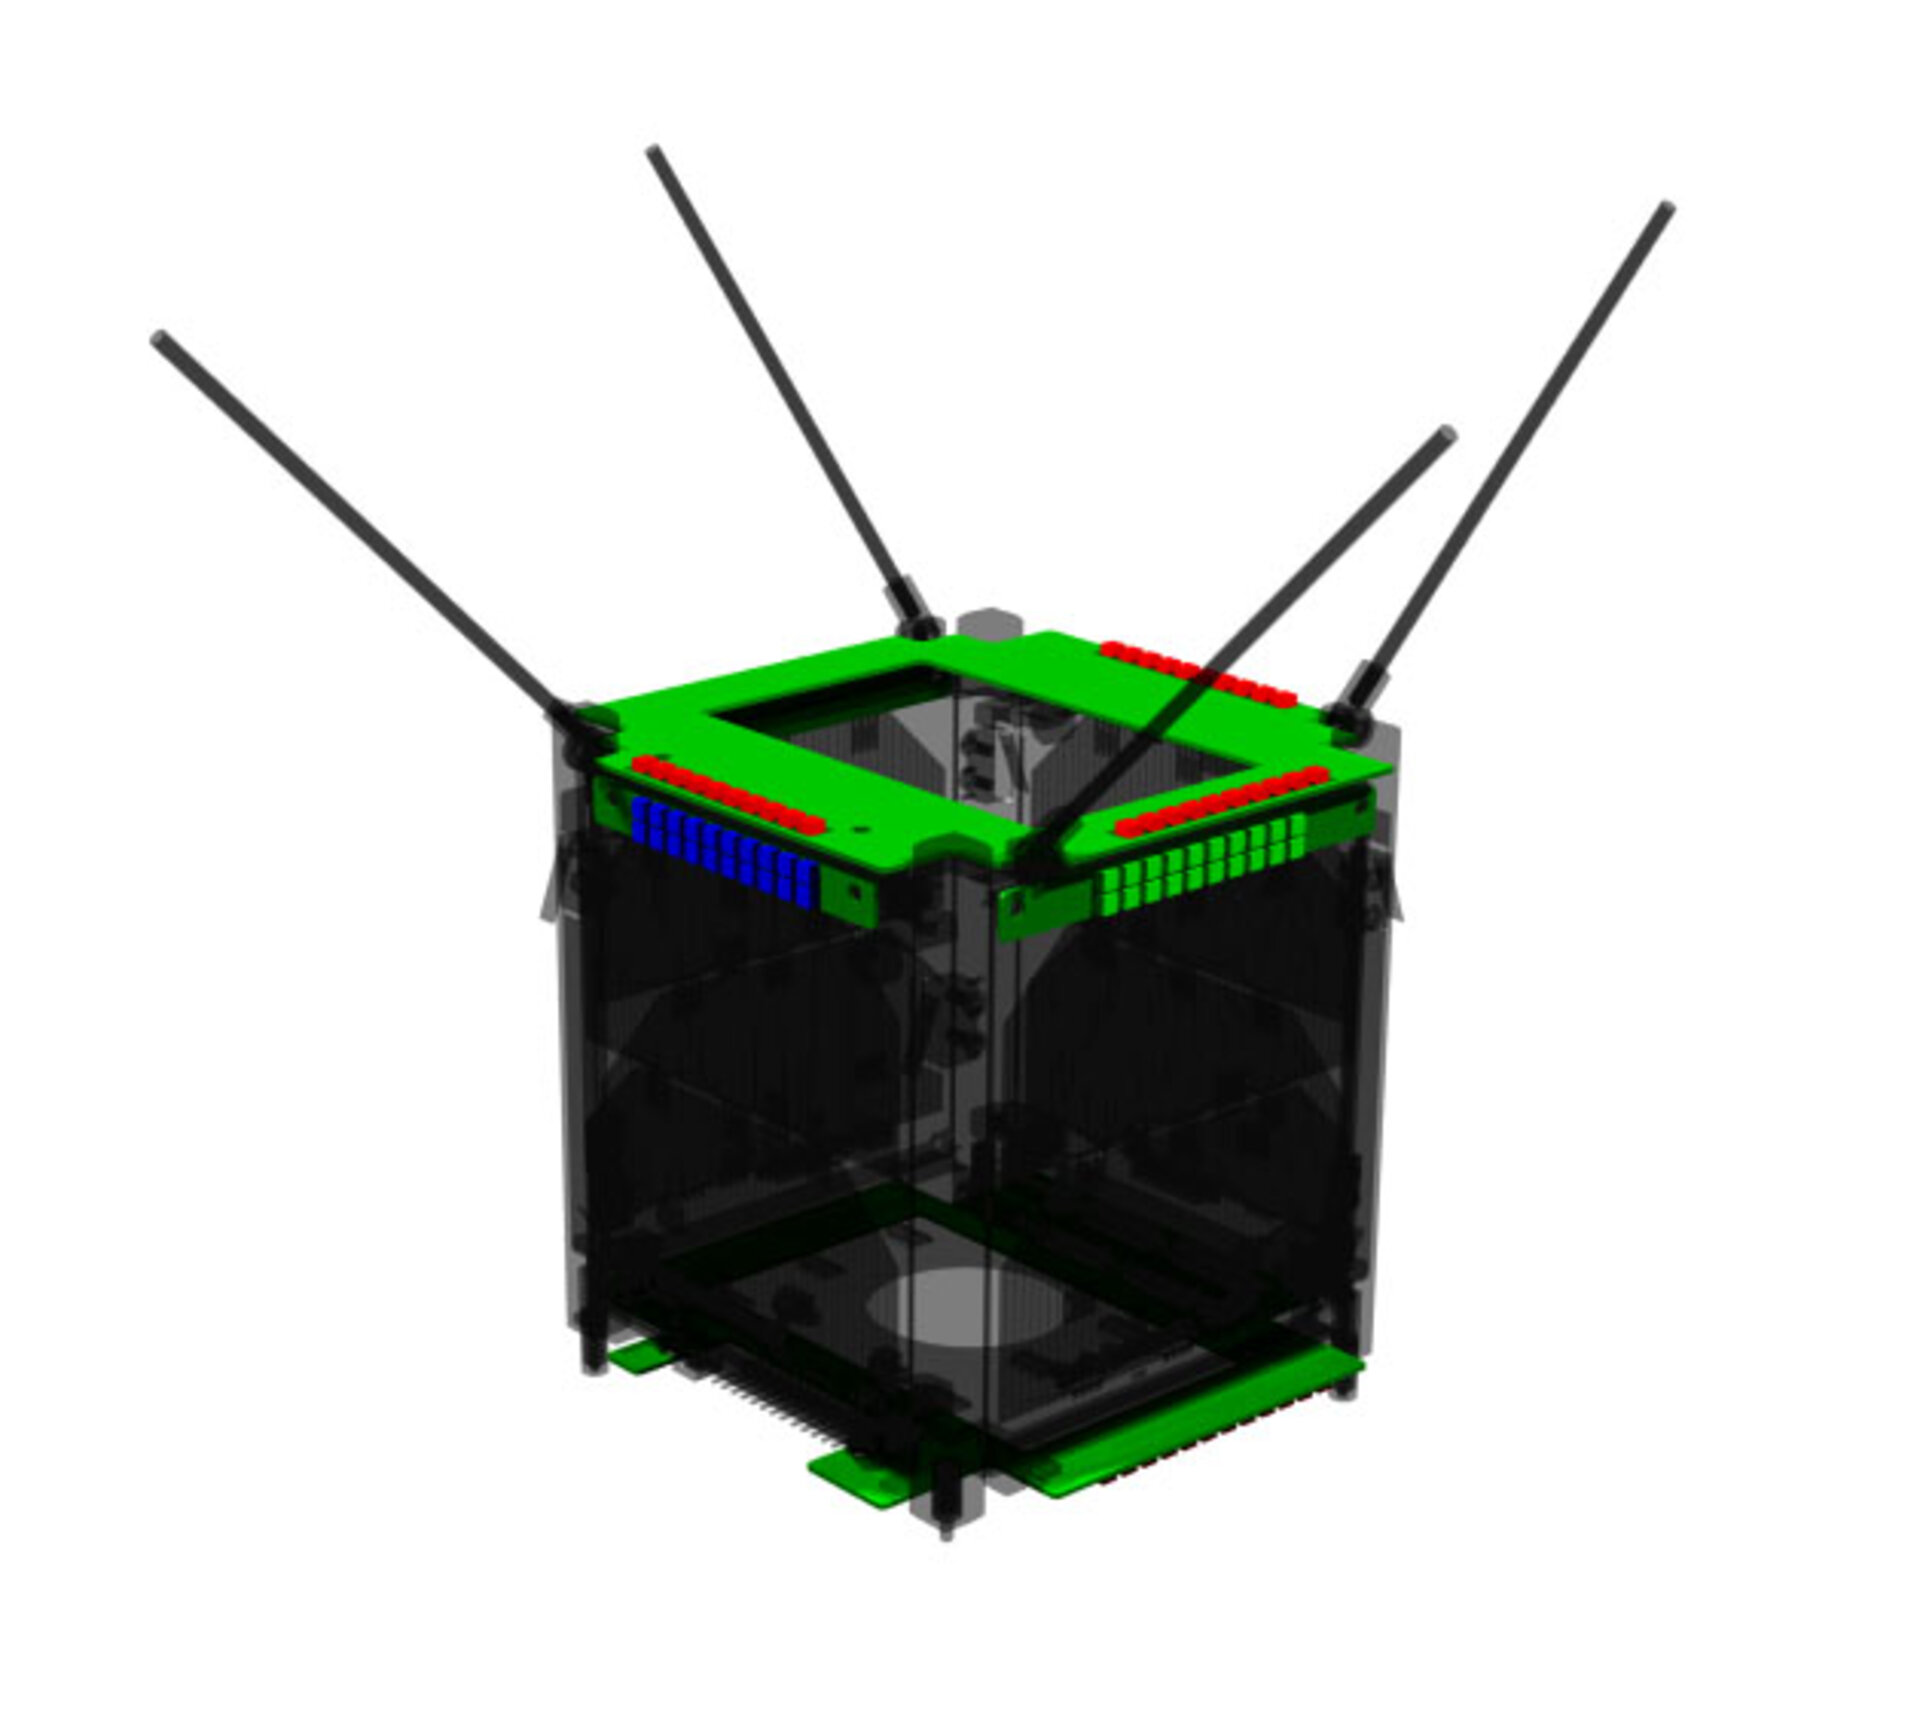 ESA - CAD image of LEDSAT